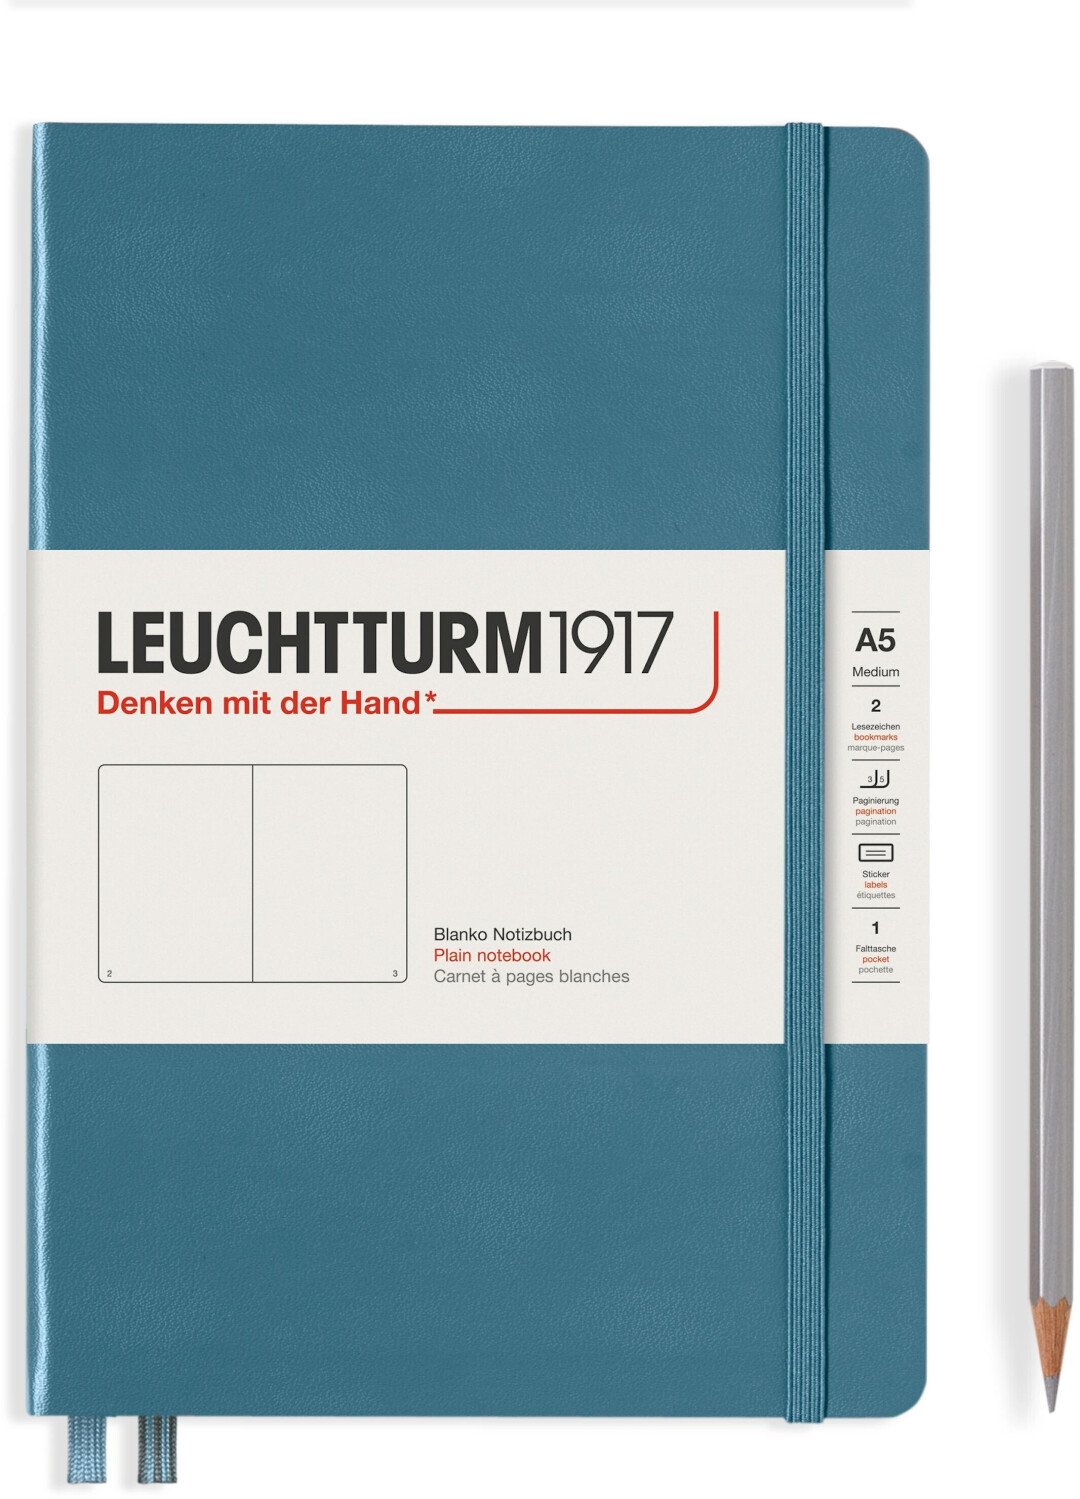 Photos - Notebook Leuchtturm1917 363333 